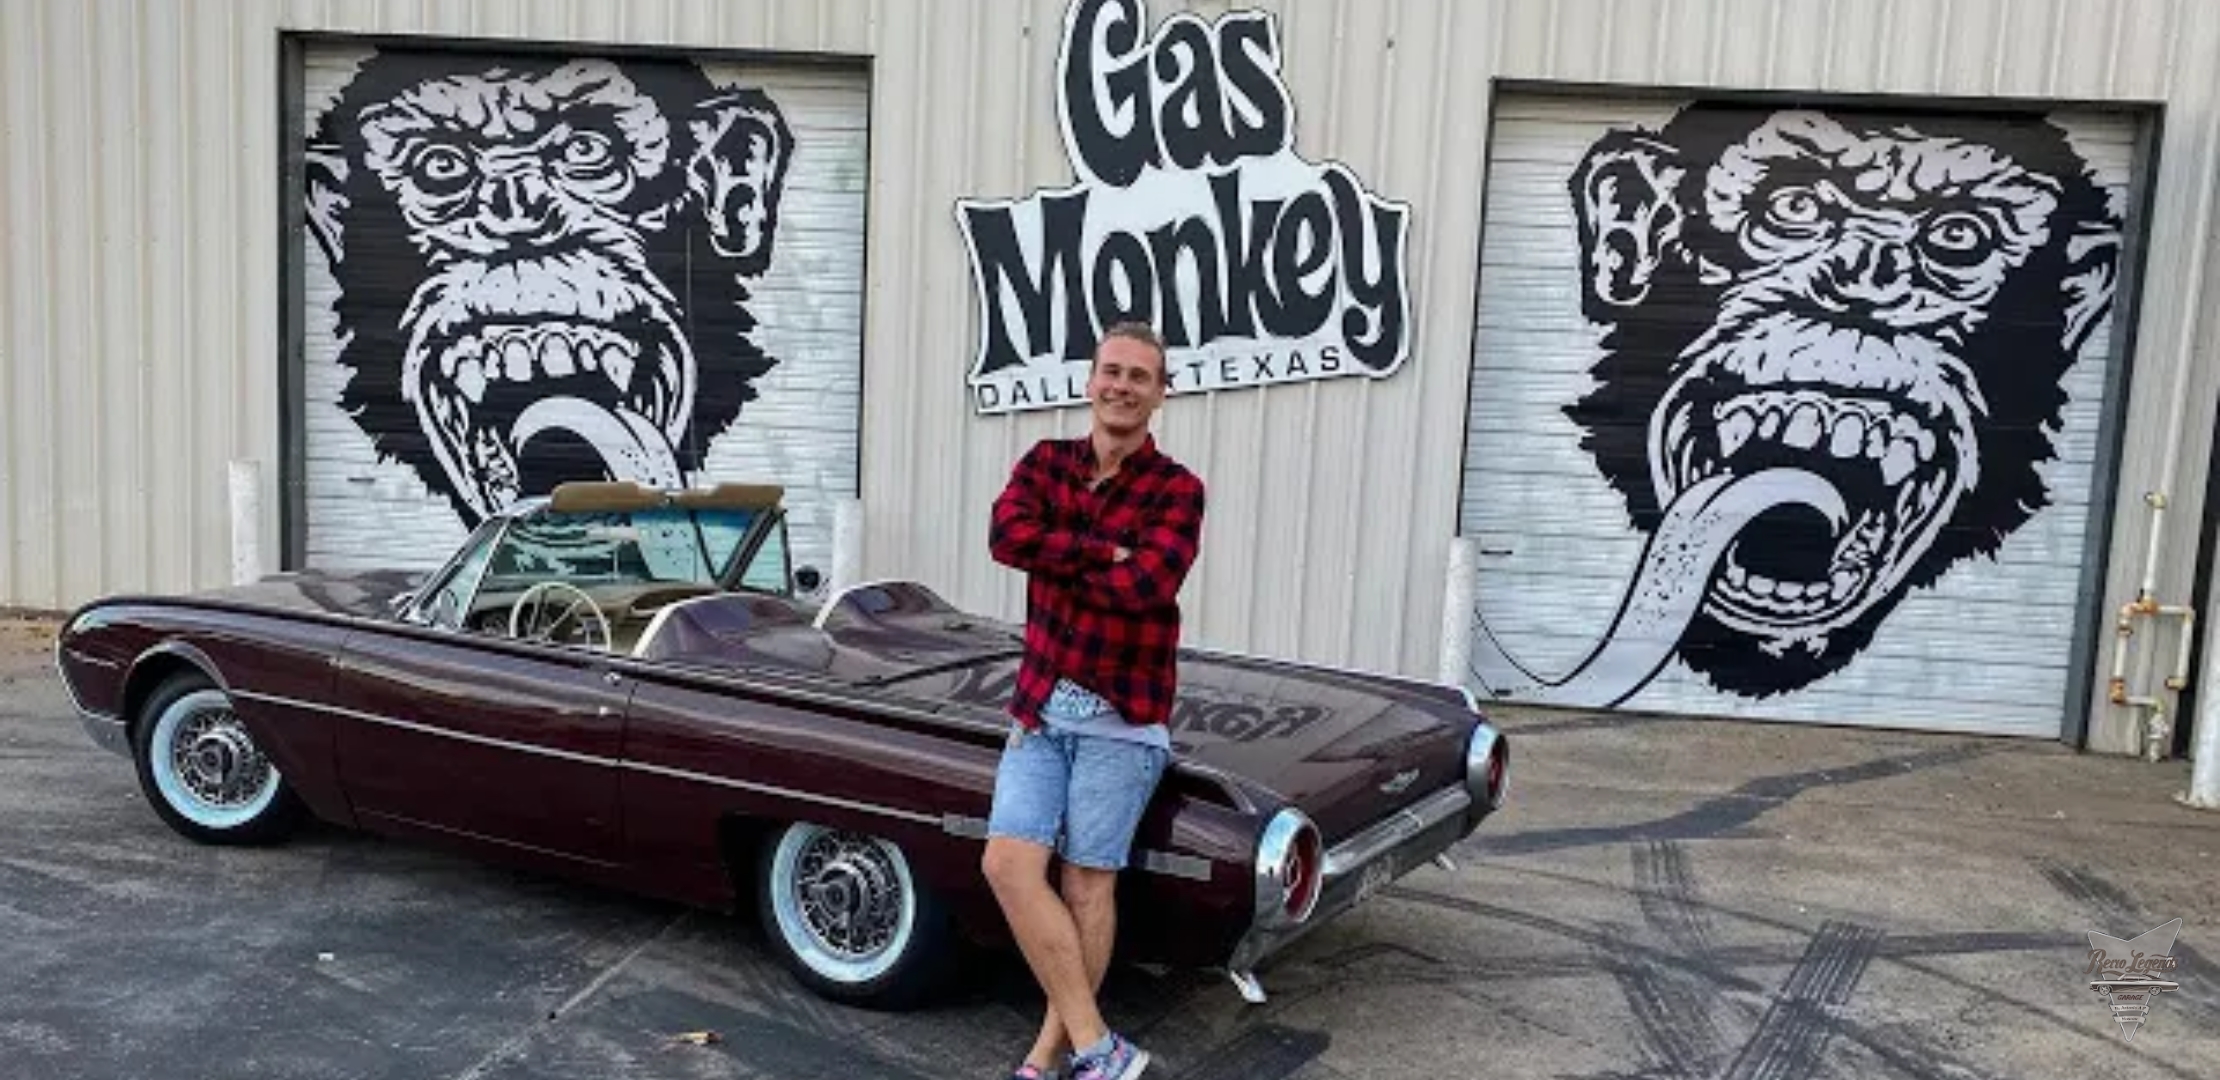 Анонс видео-теста Gas Monkey Garage! Обзор мастерской шоу Fast'n'Loud!!